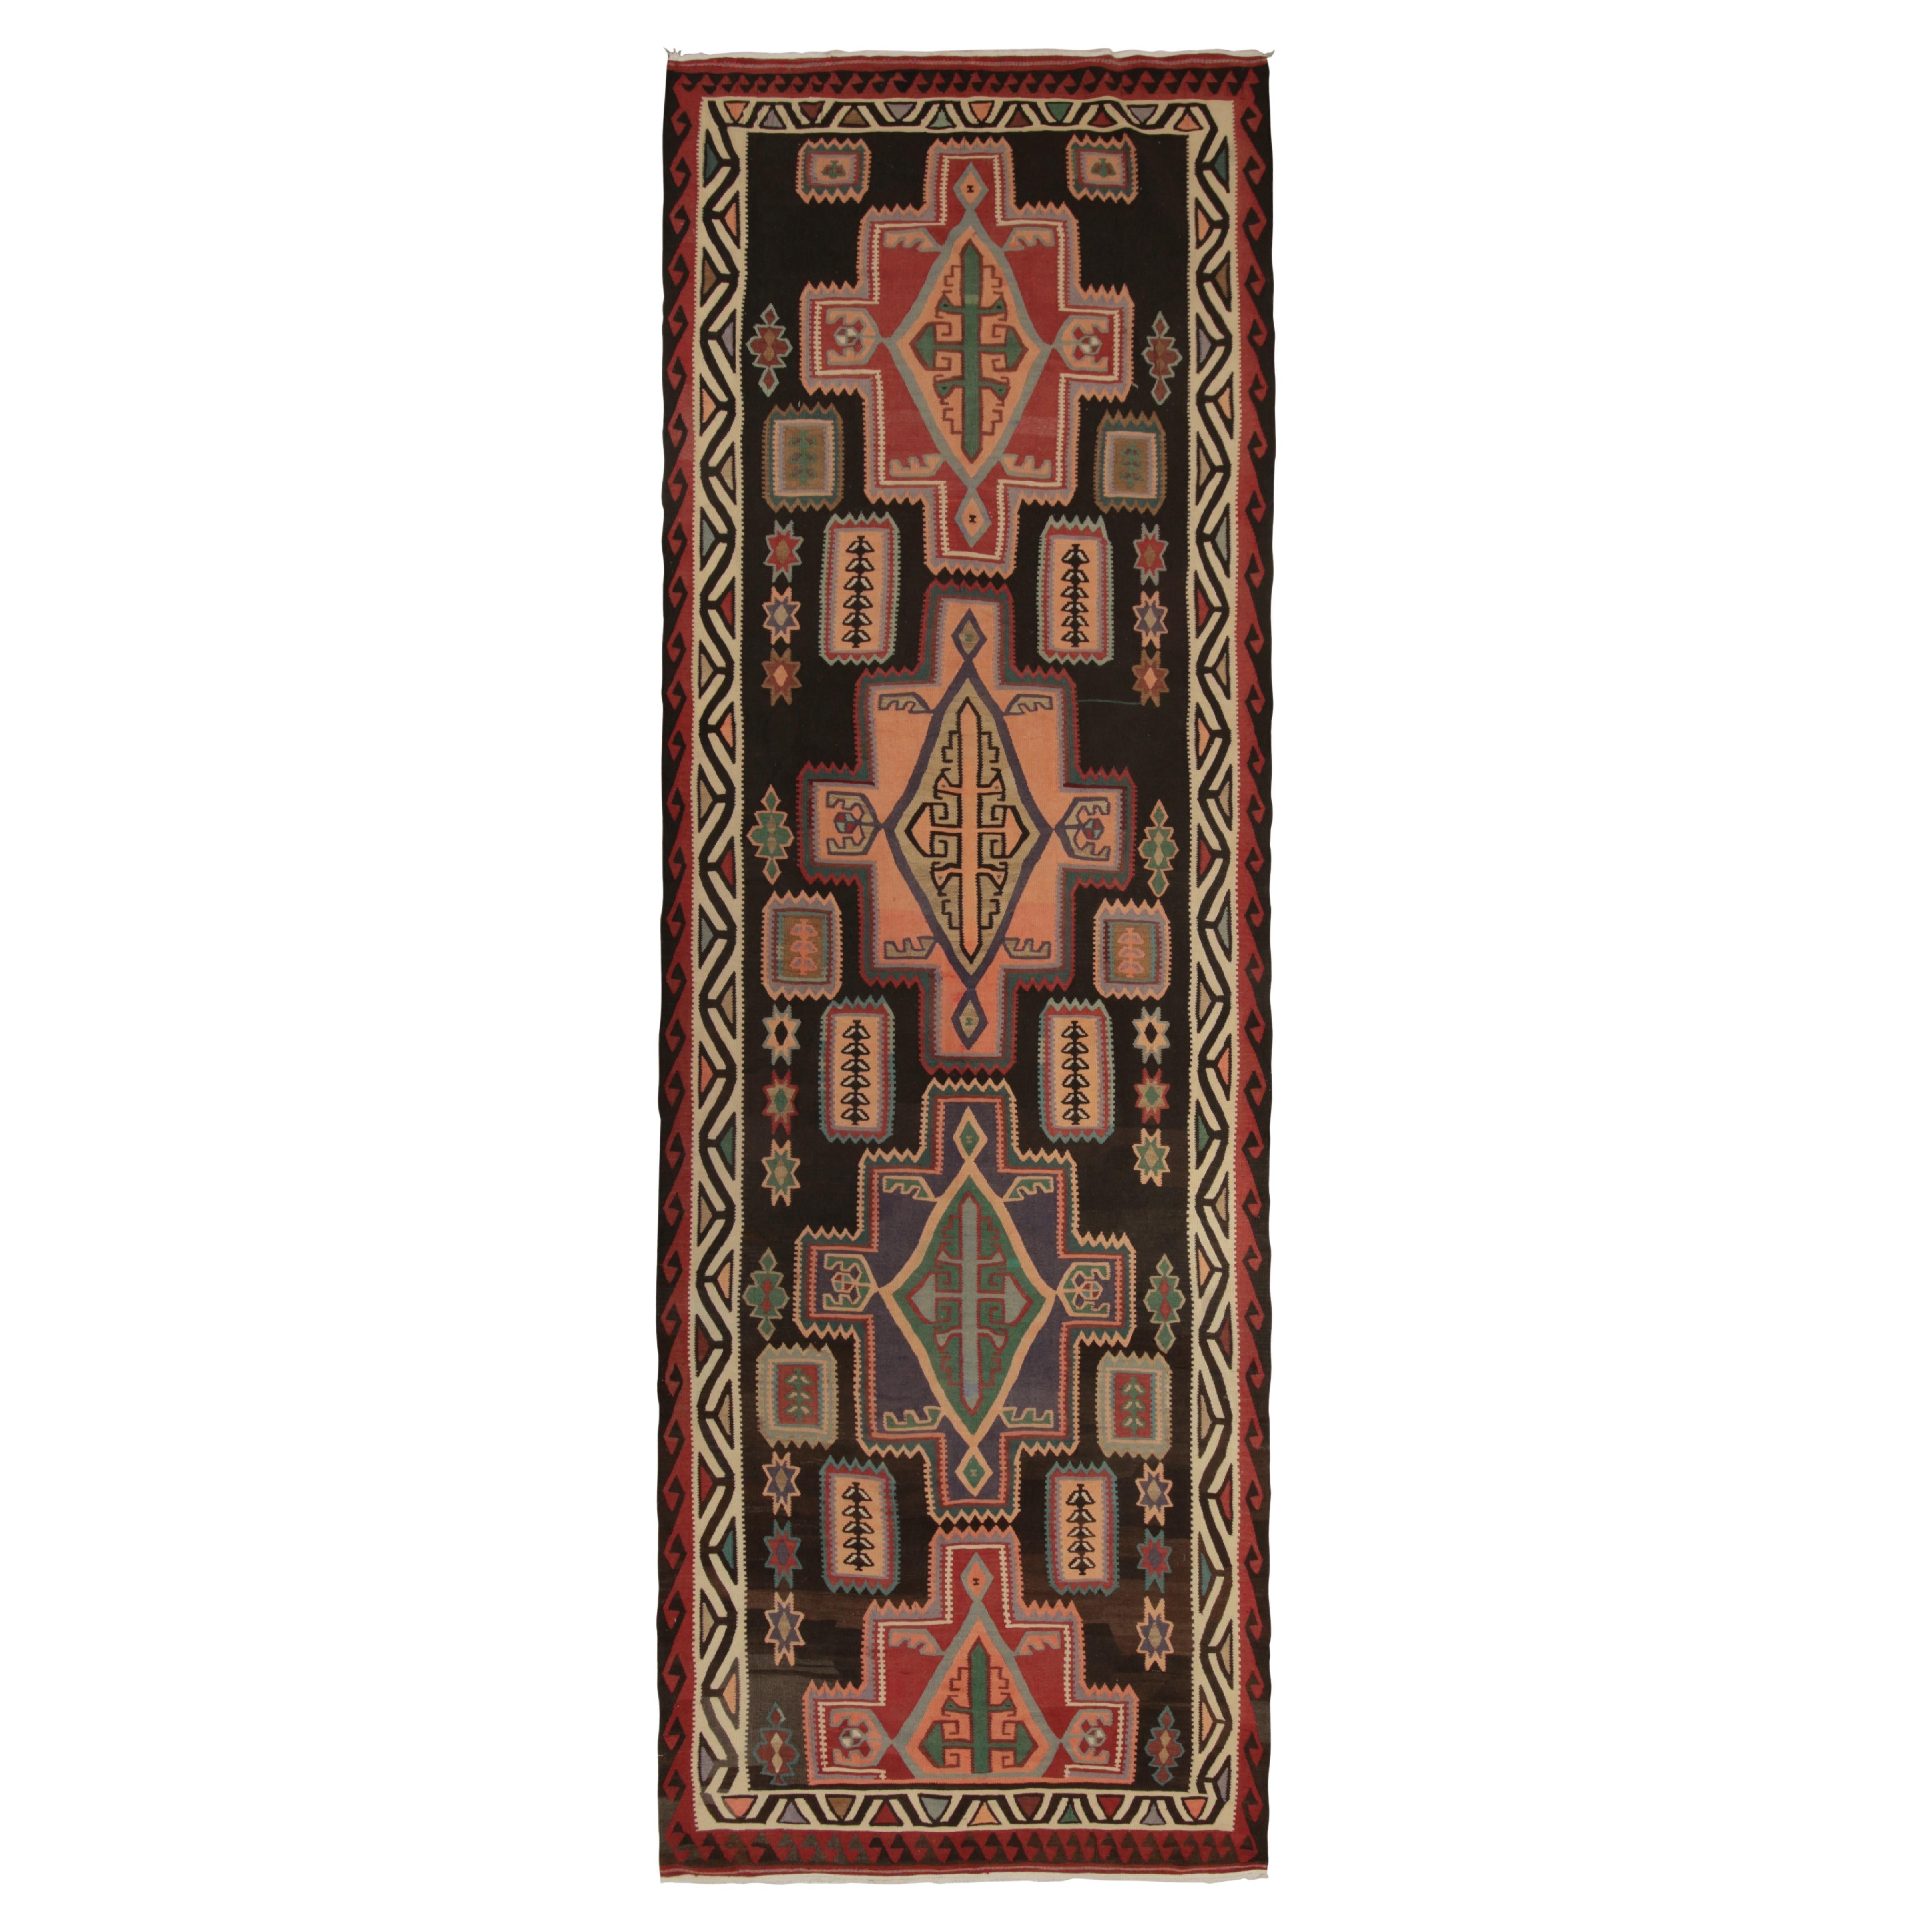 Tapis Kilim persan tribal vintage à motifs géométriques polychromes par Rug & Kilim